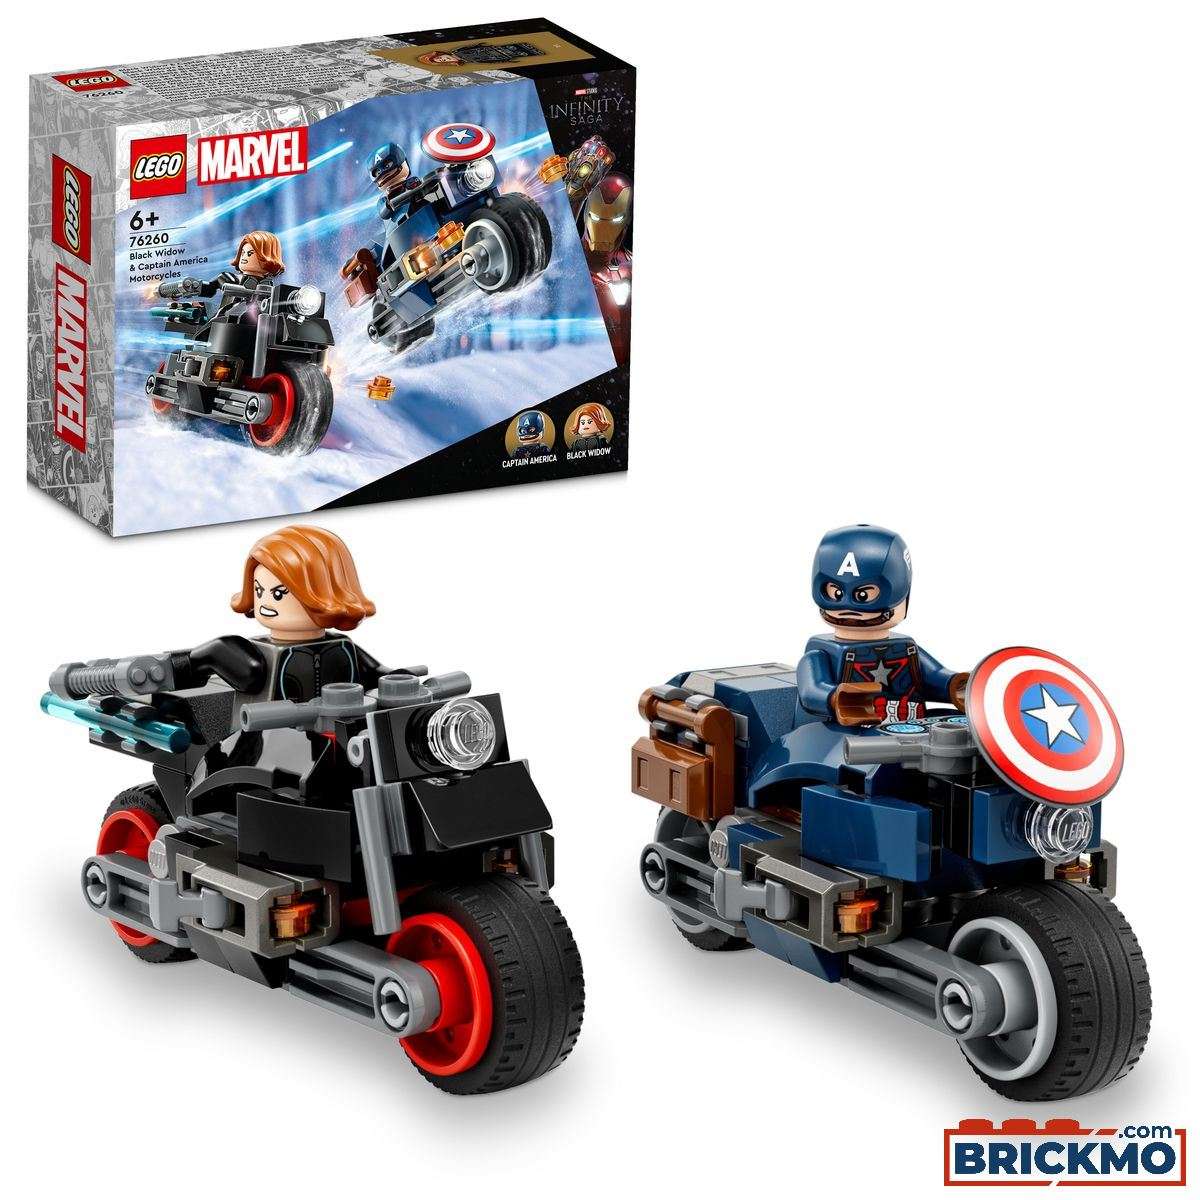 LEGO Marvel 76260 Motos de Black Widow e Captain America 76260